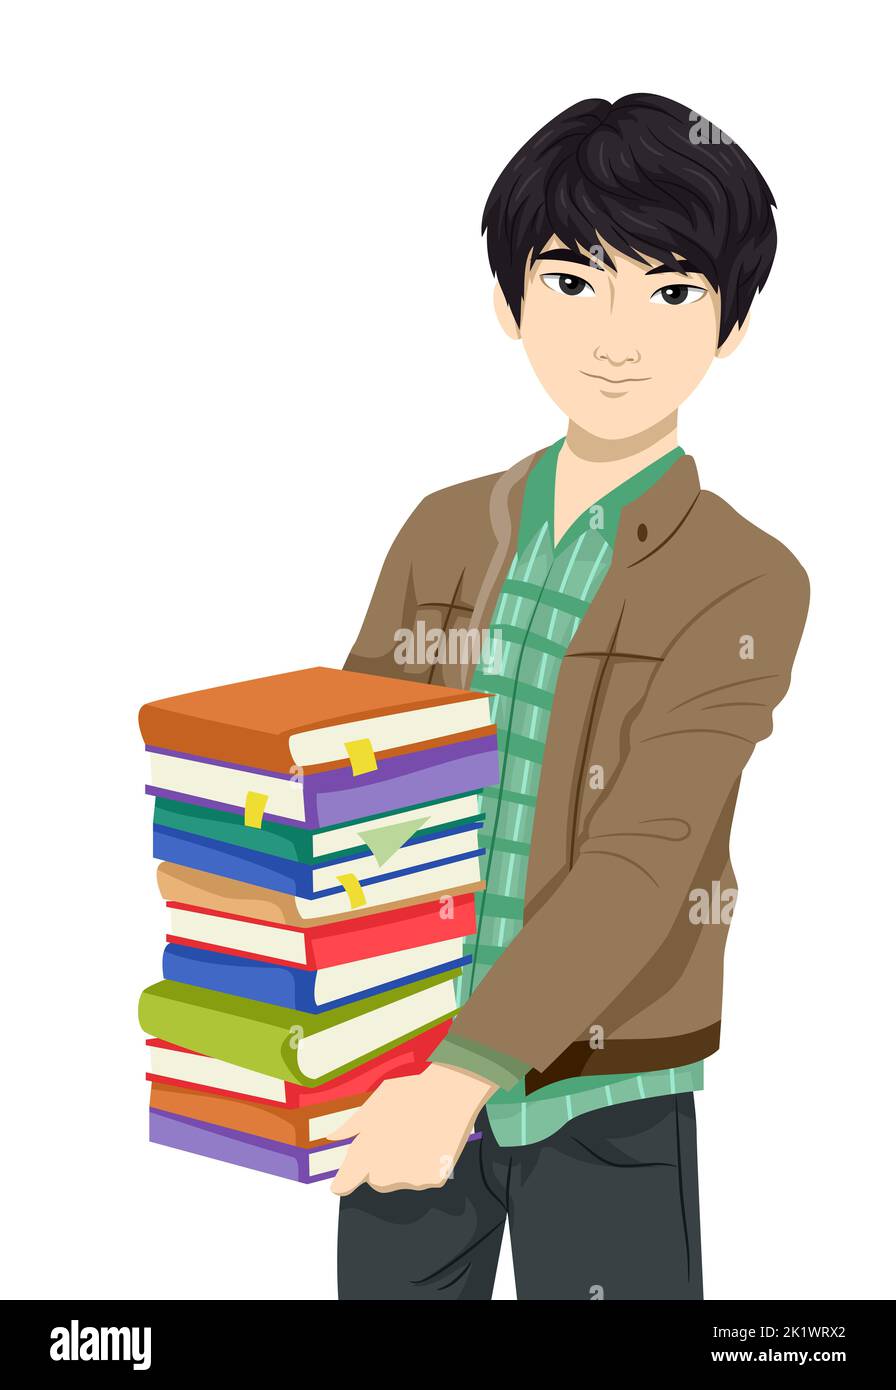 Illustrazione dello studente teen guy dell'Asia orientale che porta le pile di libri Foto Stock